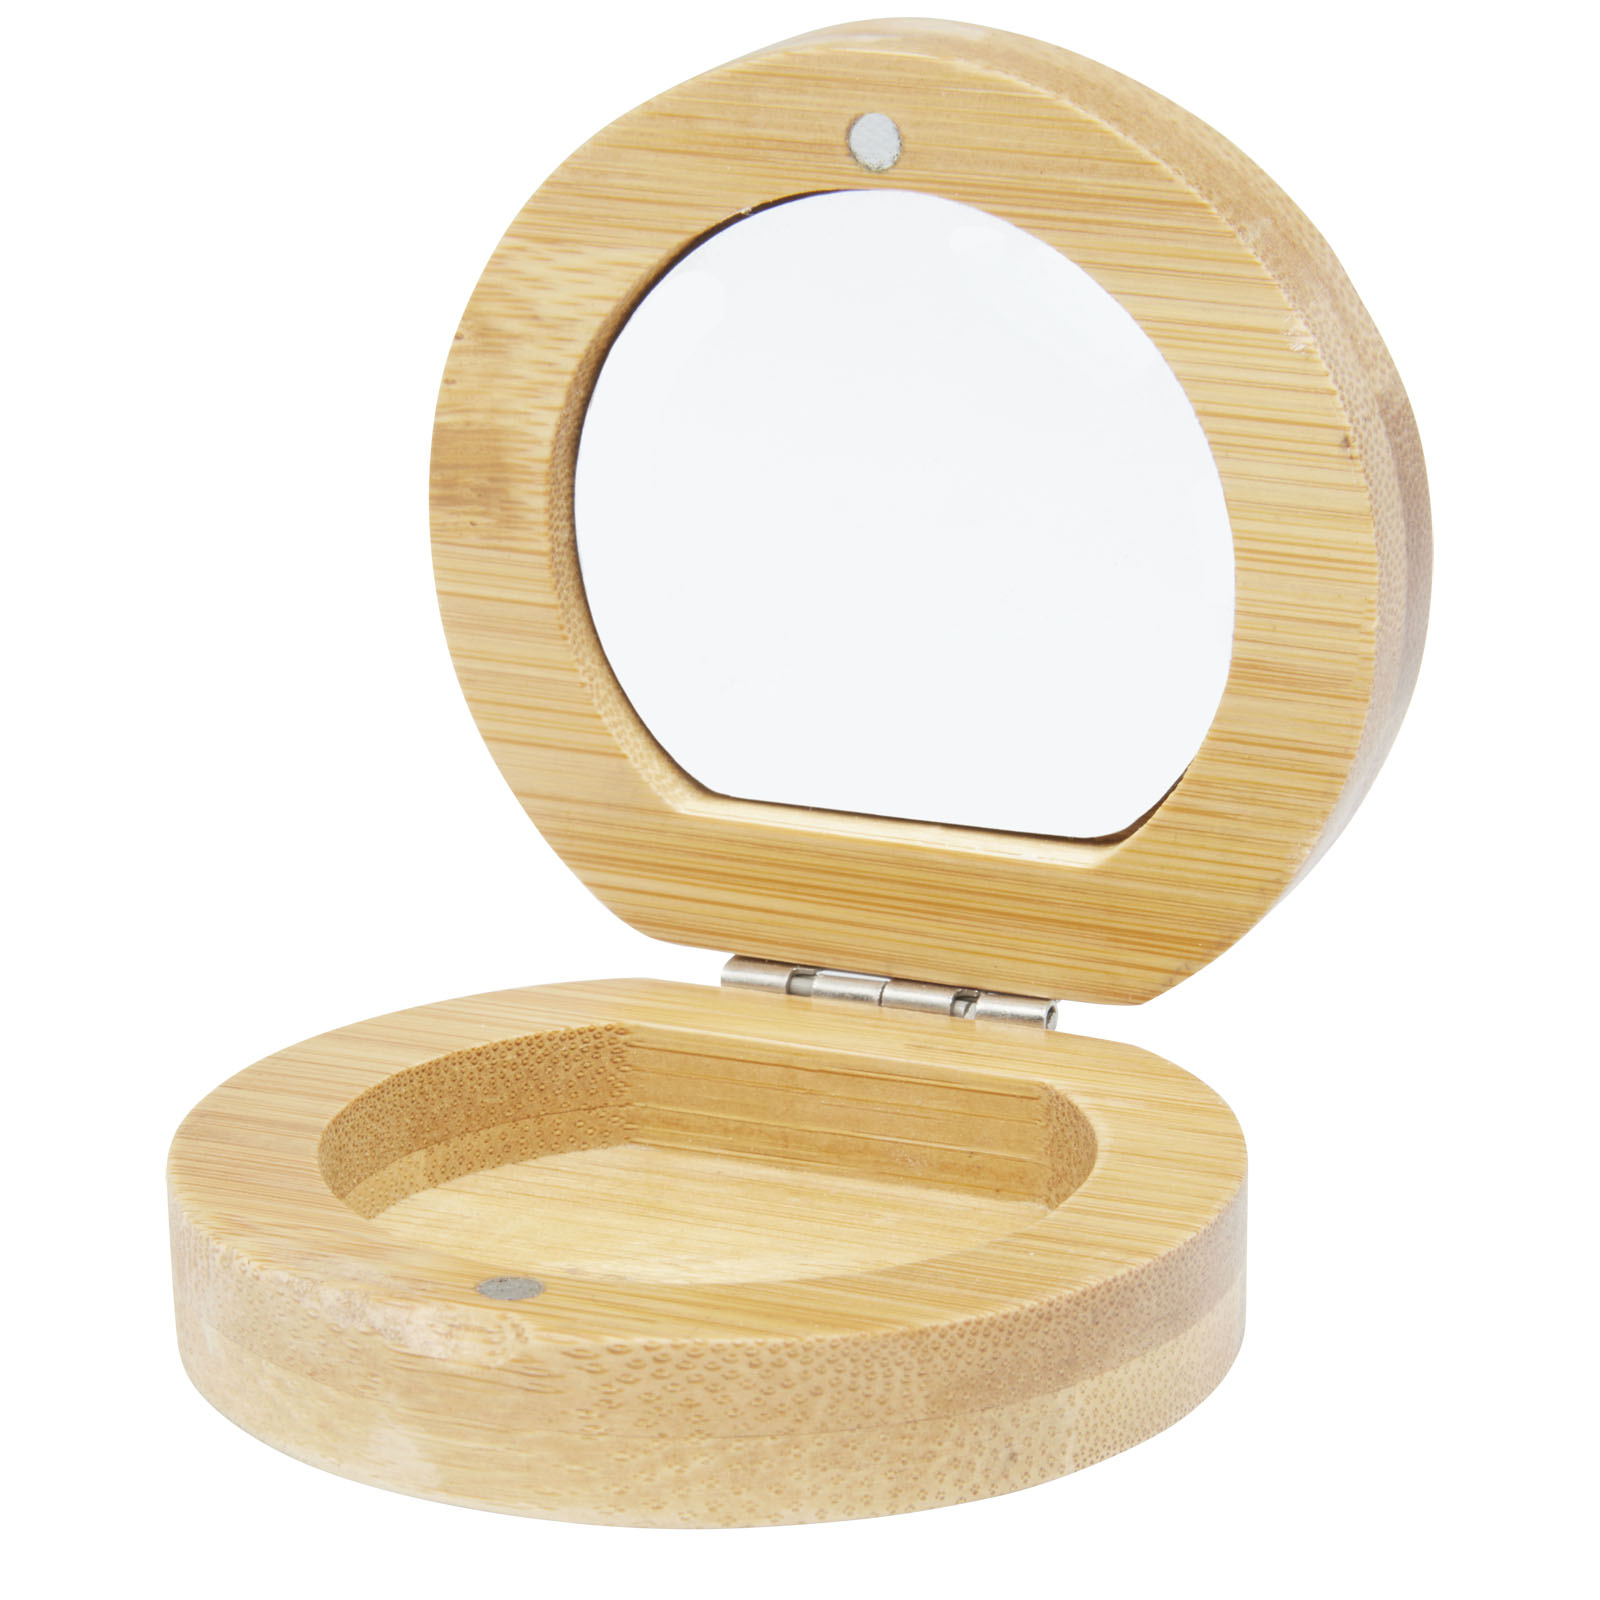 Bamboo pocket mirror MITER - natural